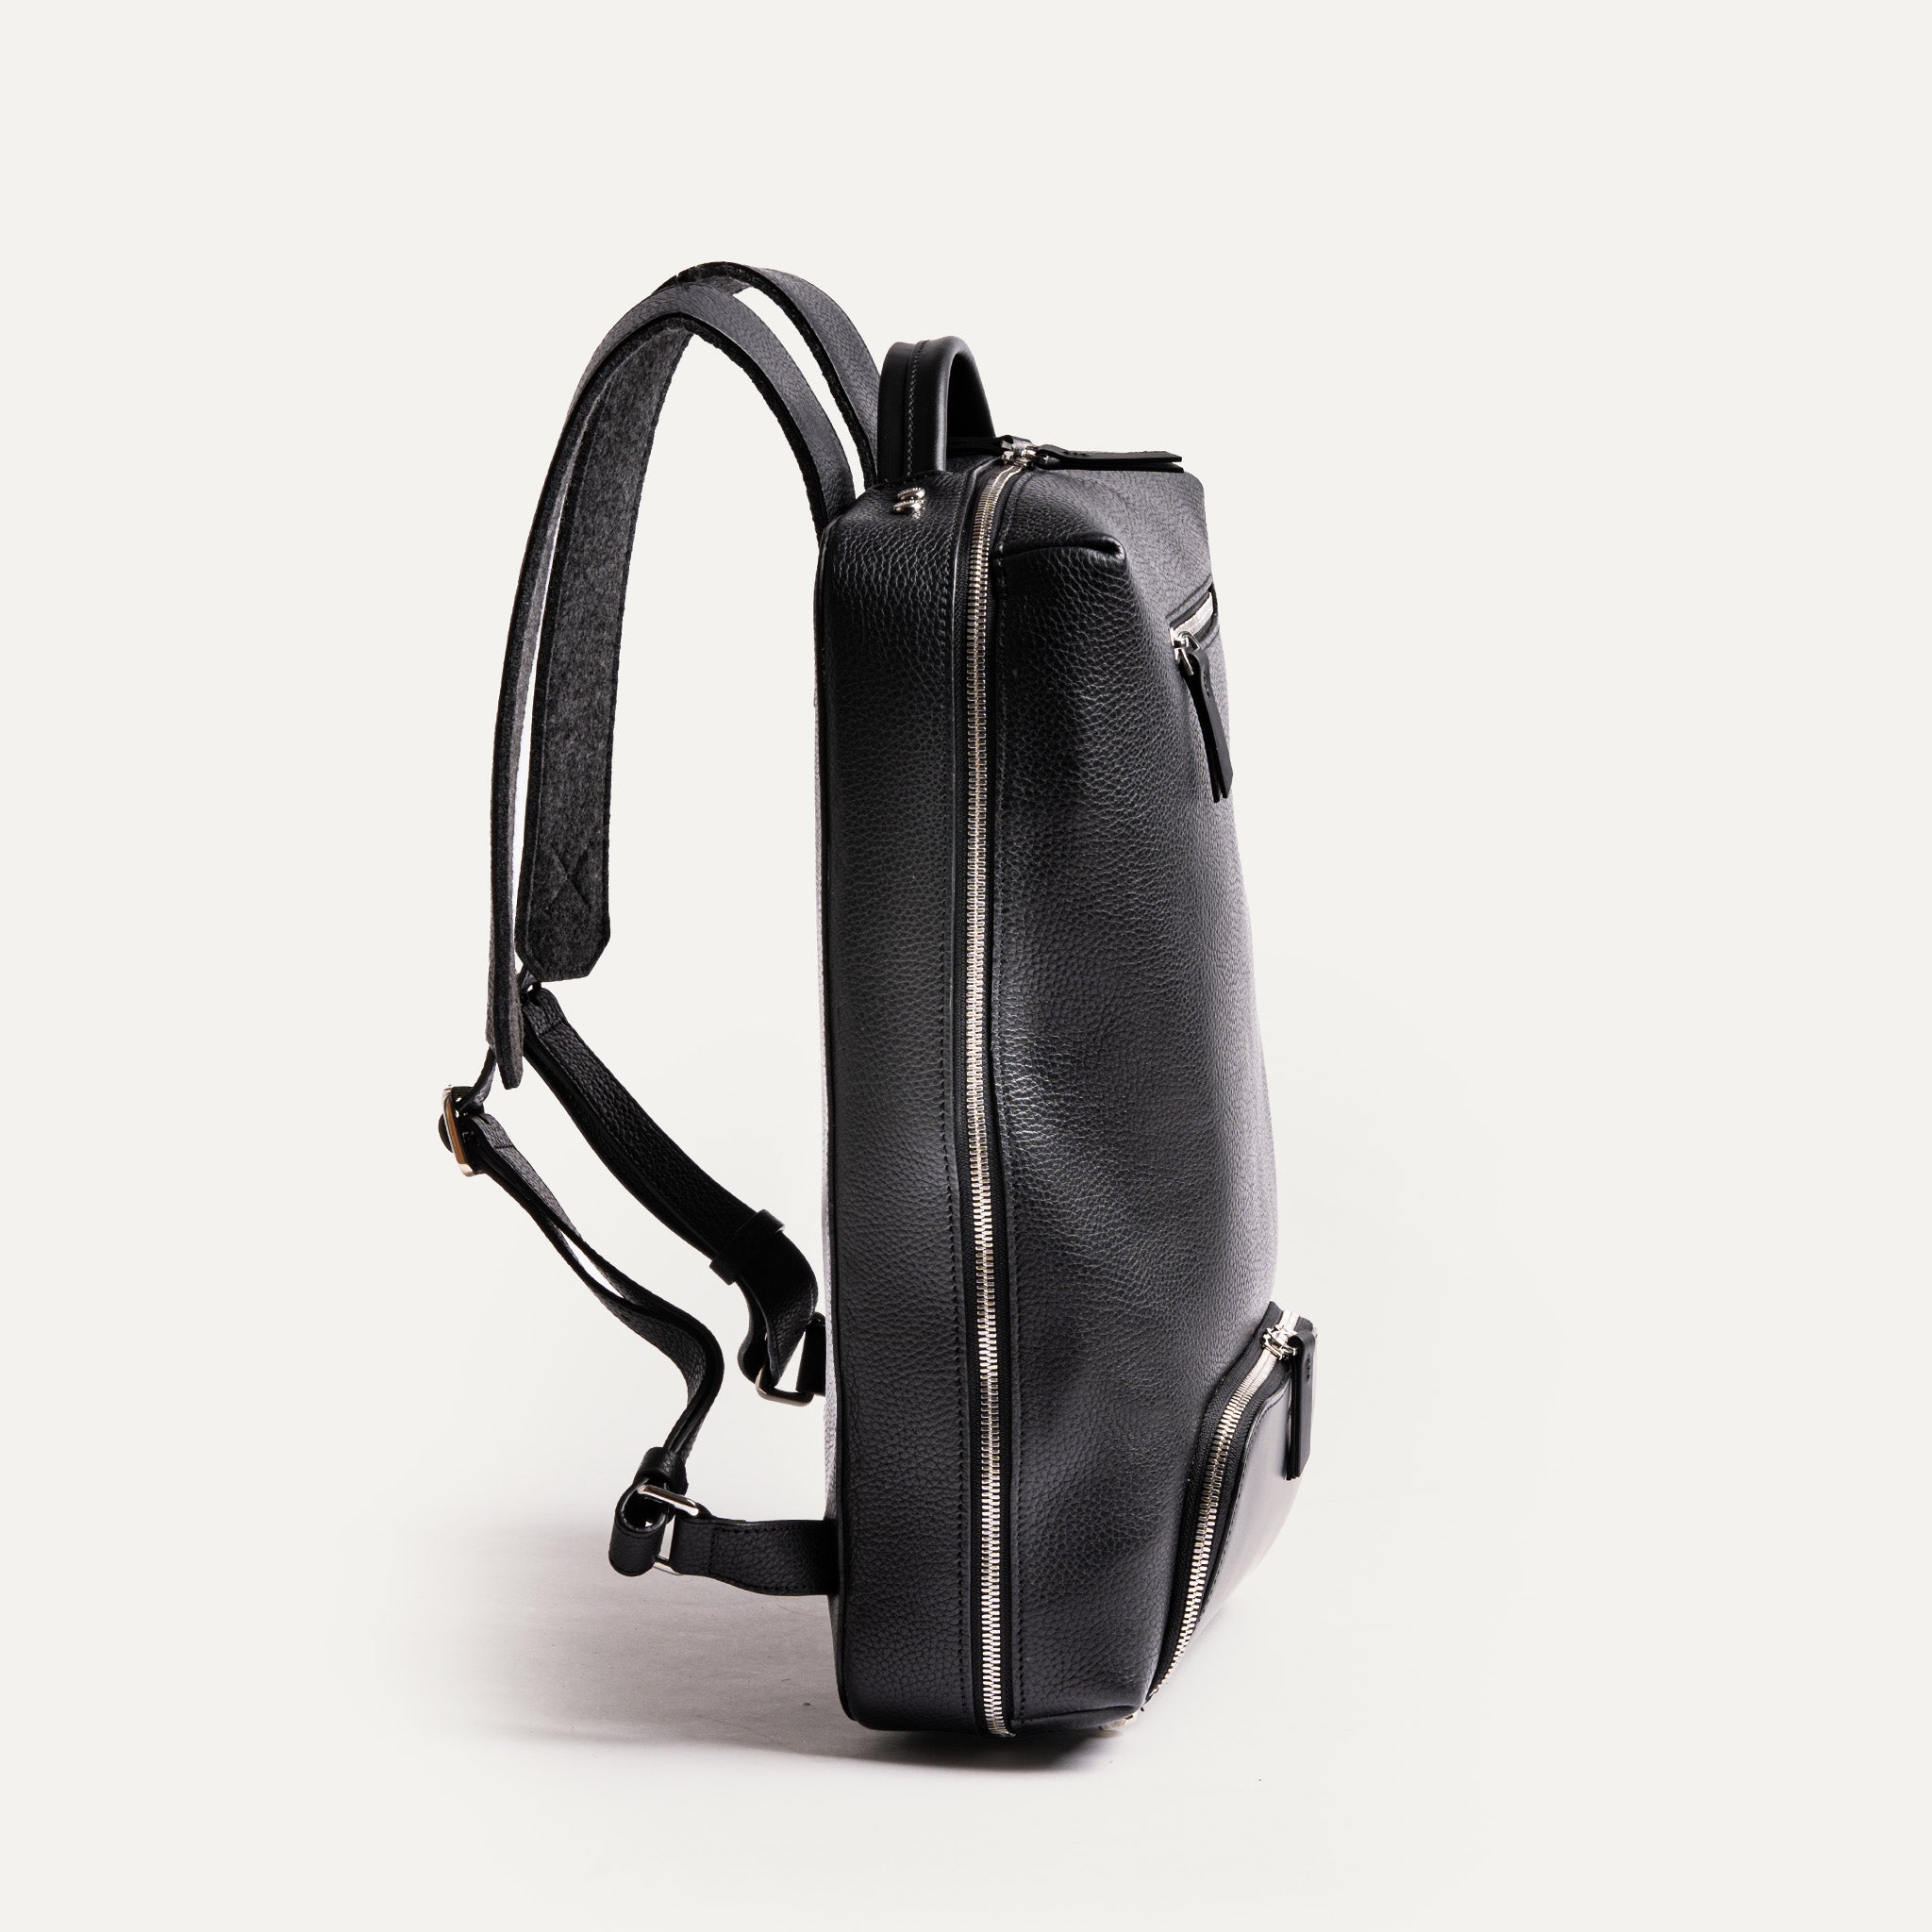 ce sac à dos offre une portabilité sans effort et sans sacrifier le style ou la fonctionnalité. Ses bretelles ajustables assurent un ajustement confortable